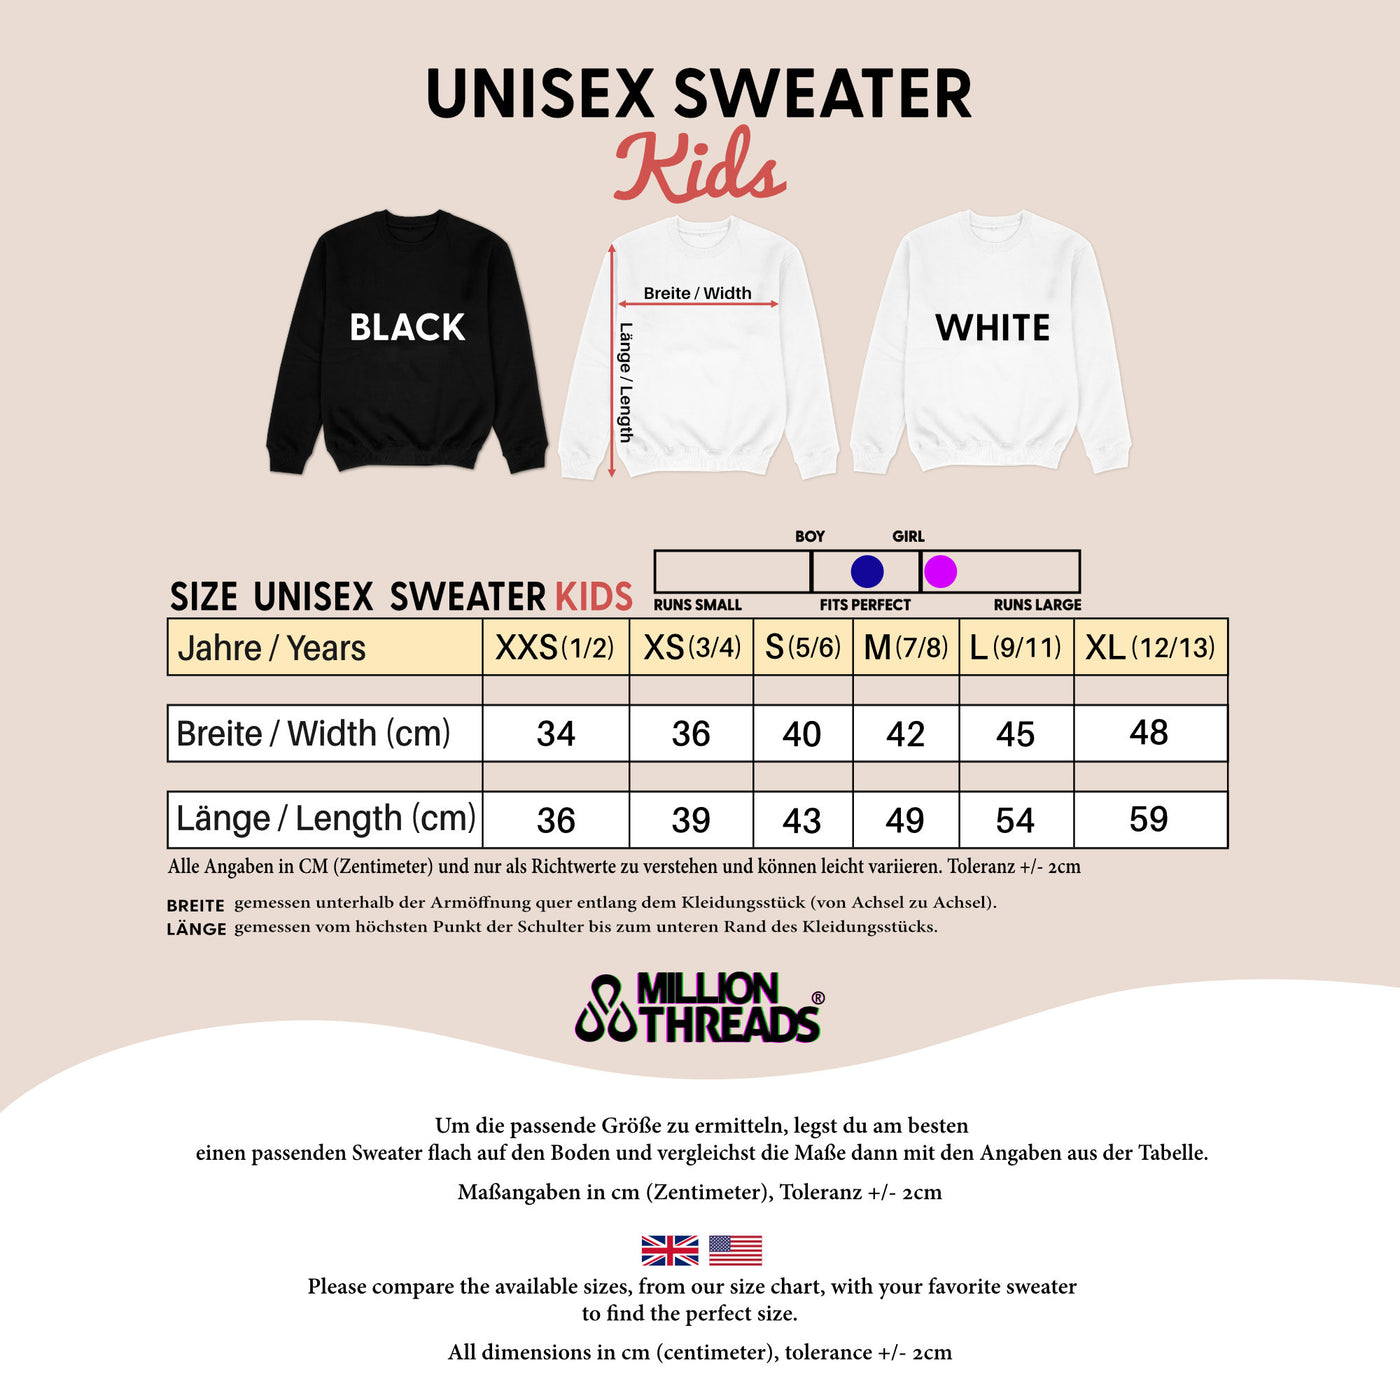 The Original The Remix Pullover Vater Sohn Partnerlook Sweatshirts Mama Tochter Outfit Set personalisiert Geschenk zur Geburt für Eltern